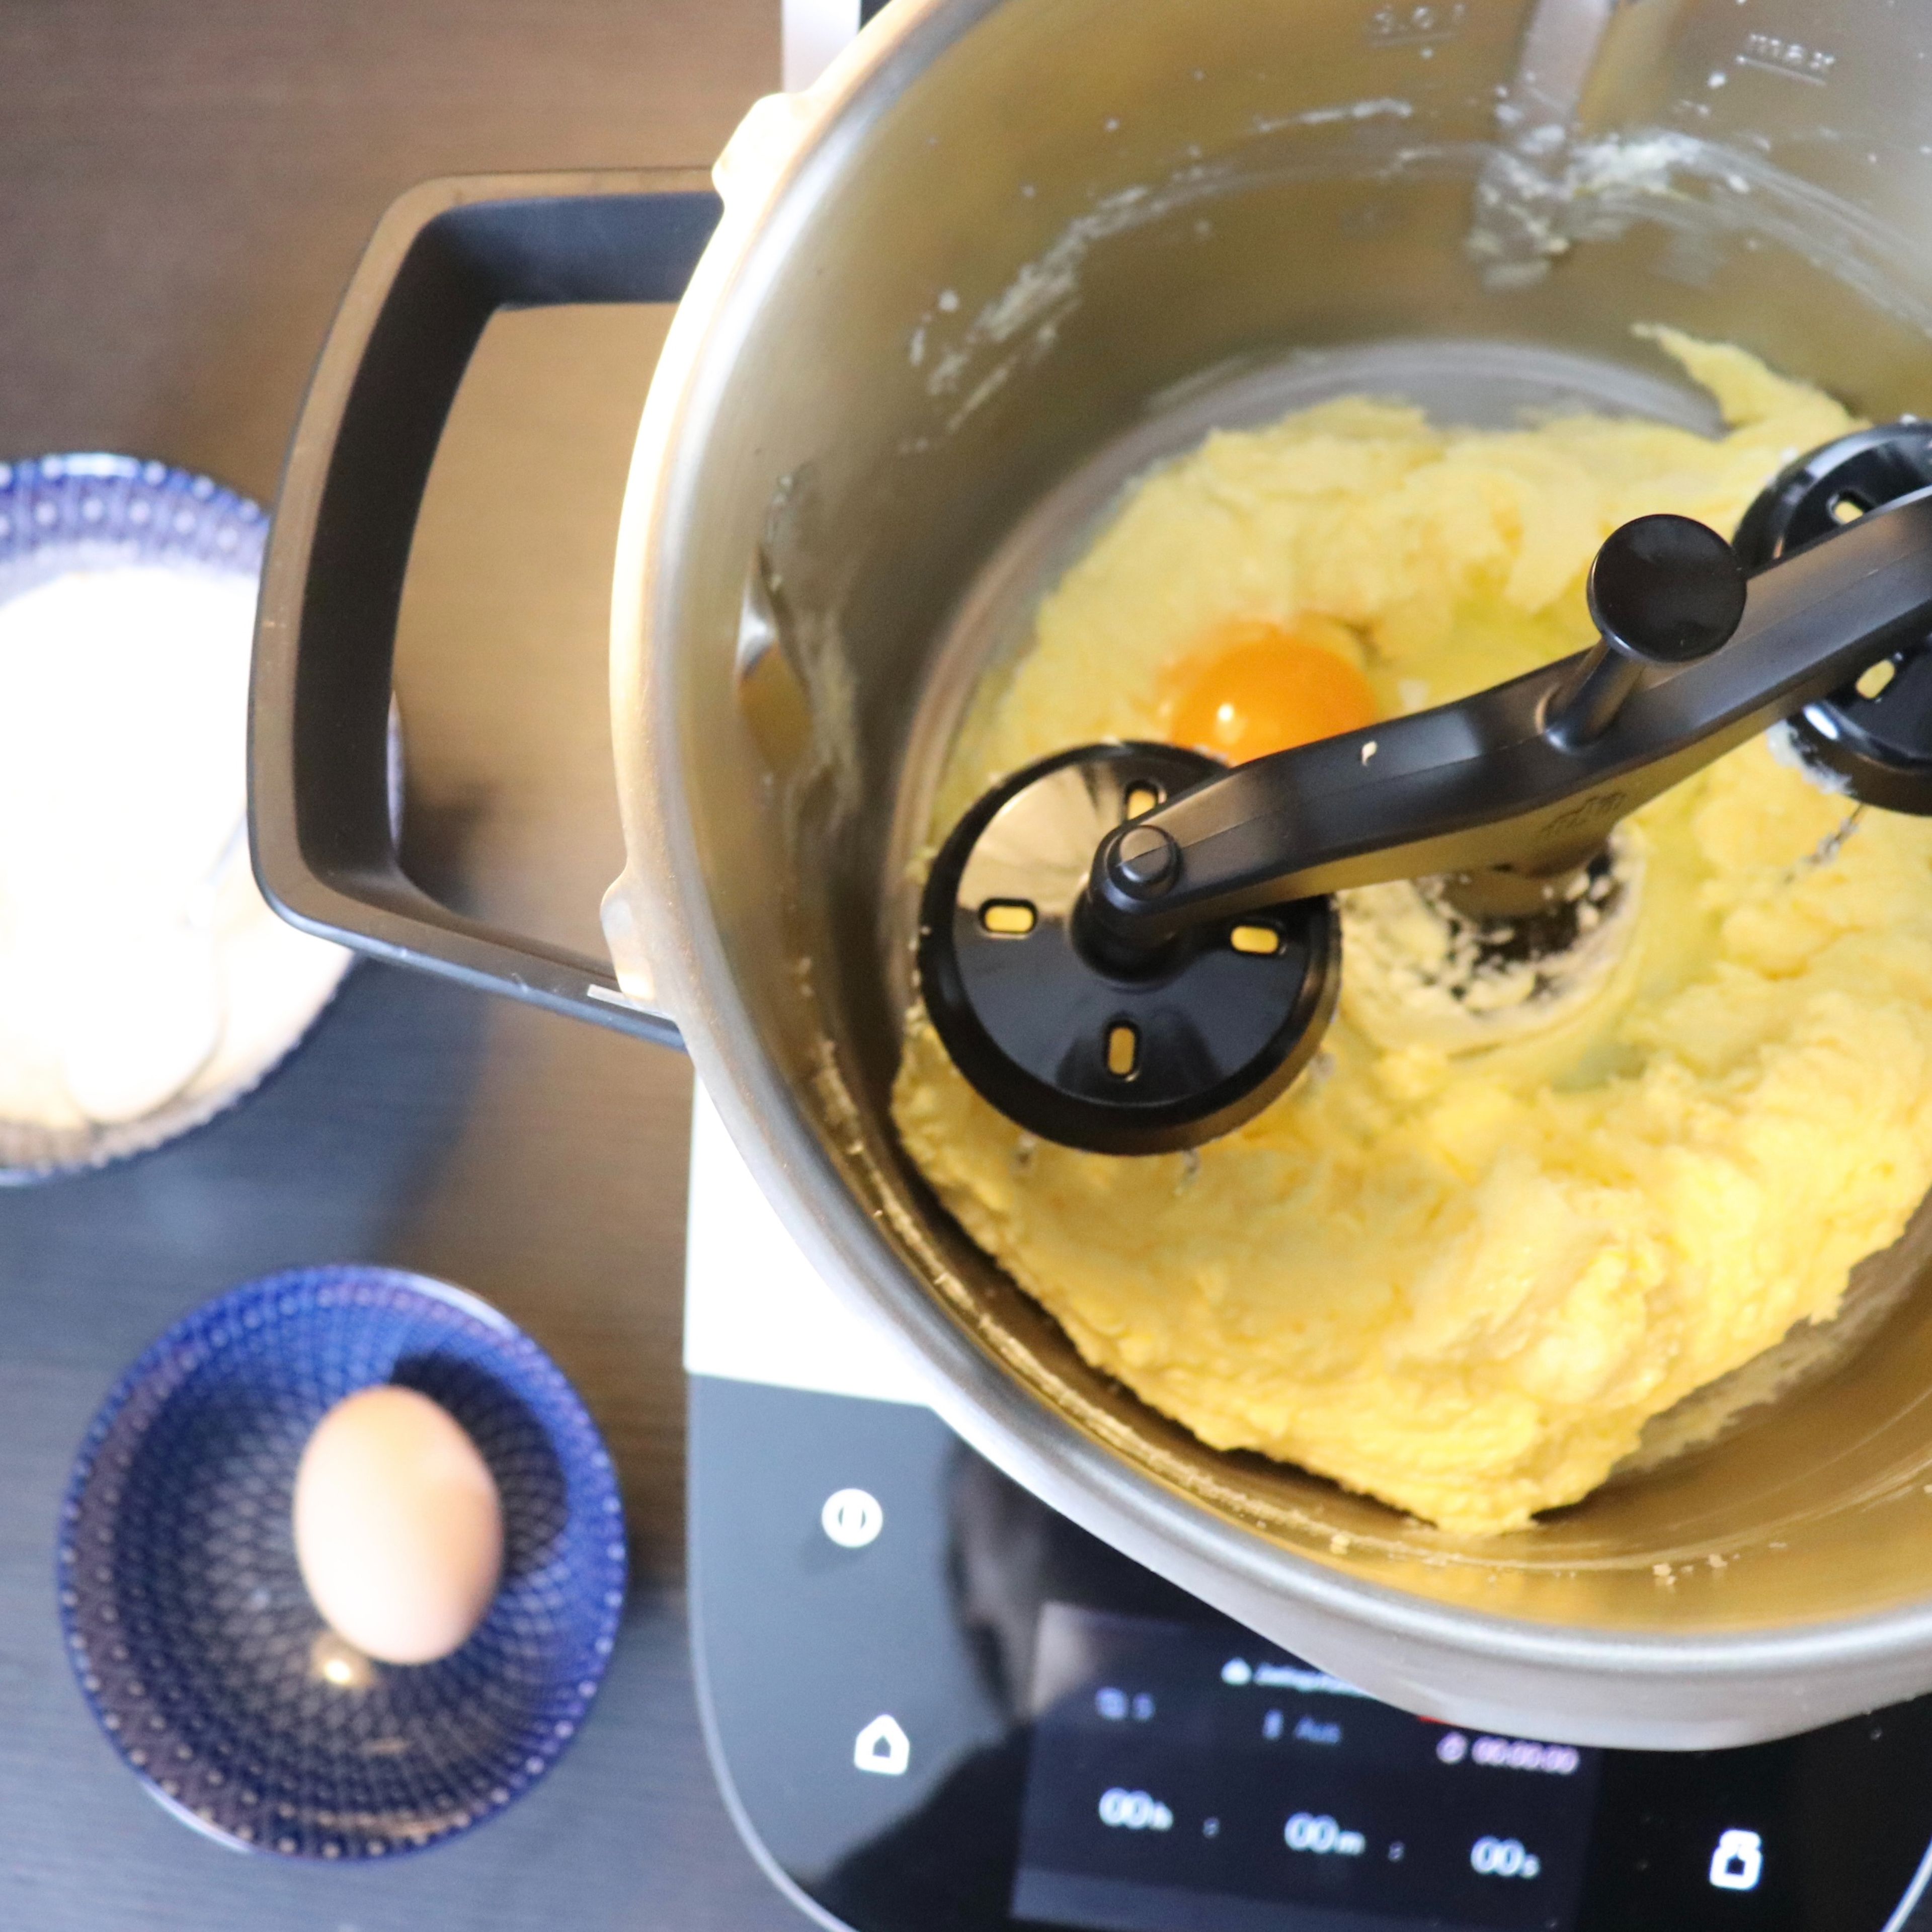 Nun können die Eier einzeln untergerührt werden (Zwillings-Rührbesen | Stufe 5 | 30 sec). Nach dem zweiten Ei einmal den Topfrand abschaben. Beim letzten Ei wird die Masse für 1 min geschlagen.